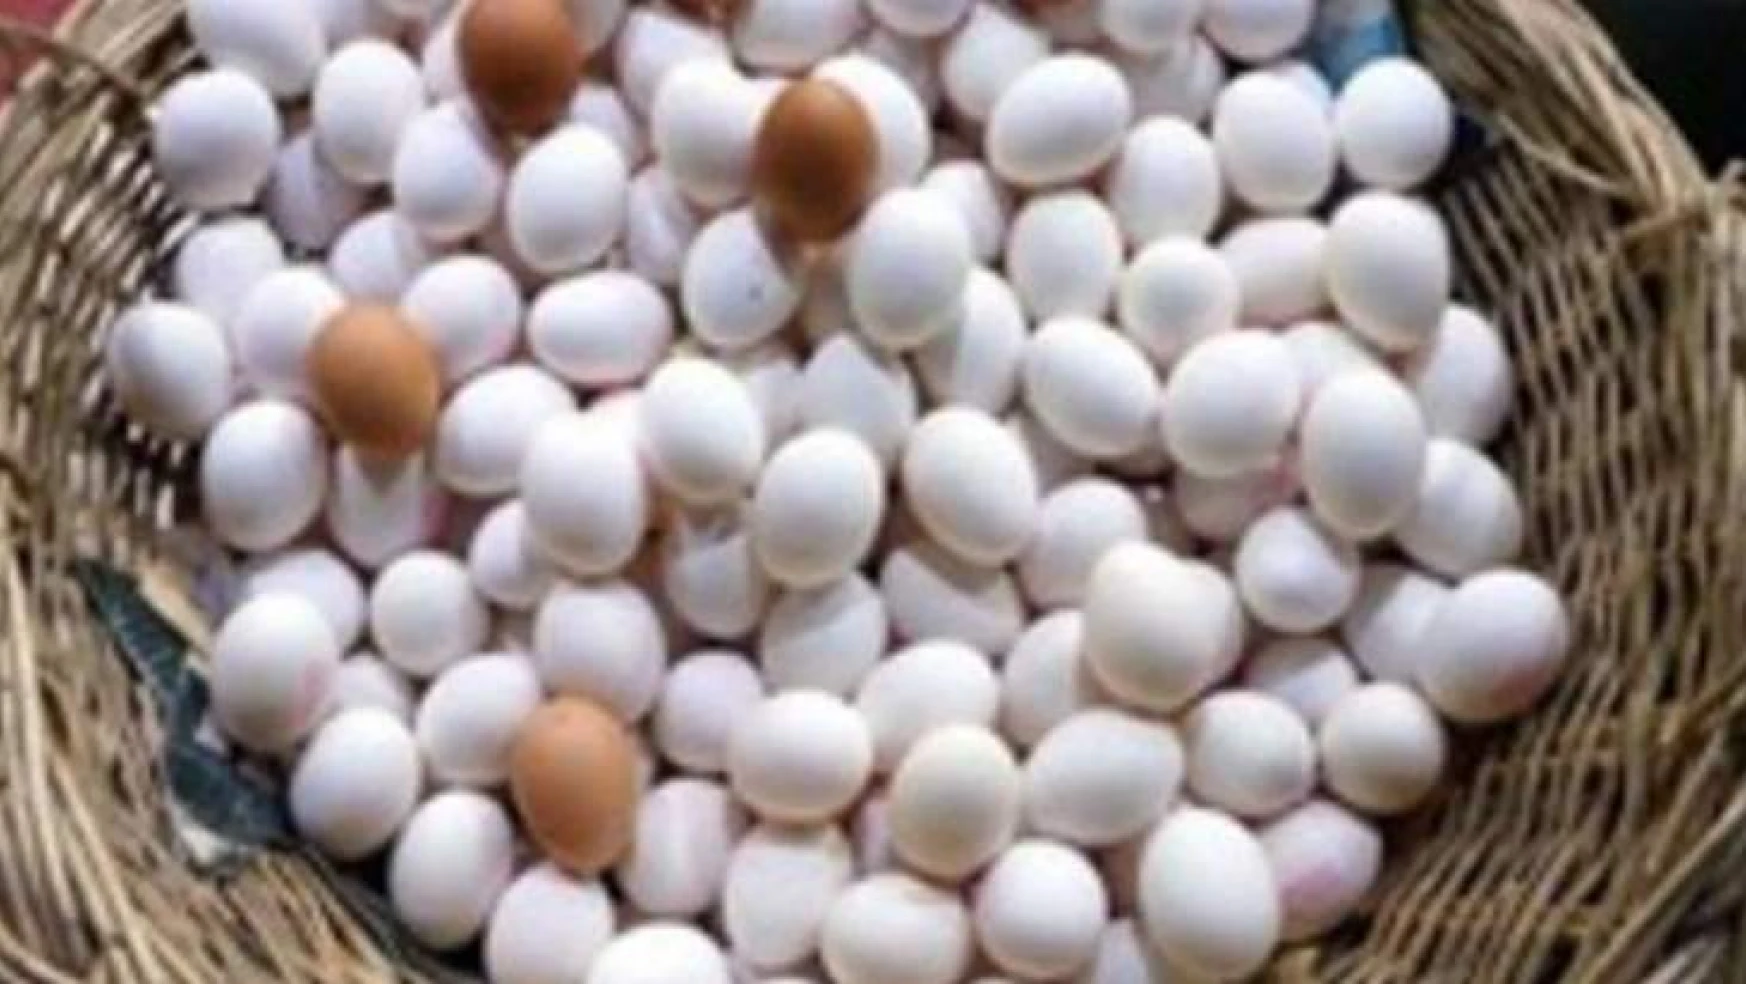 Ülkemizde tavuk yumurtası üretimi 1,7 milyar adet olarak